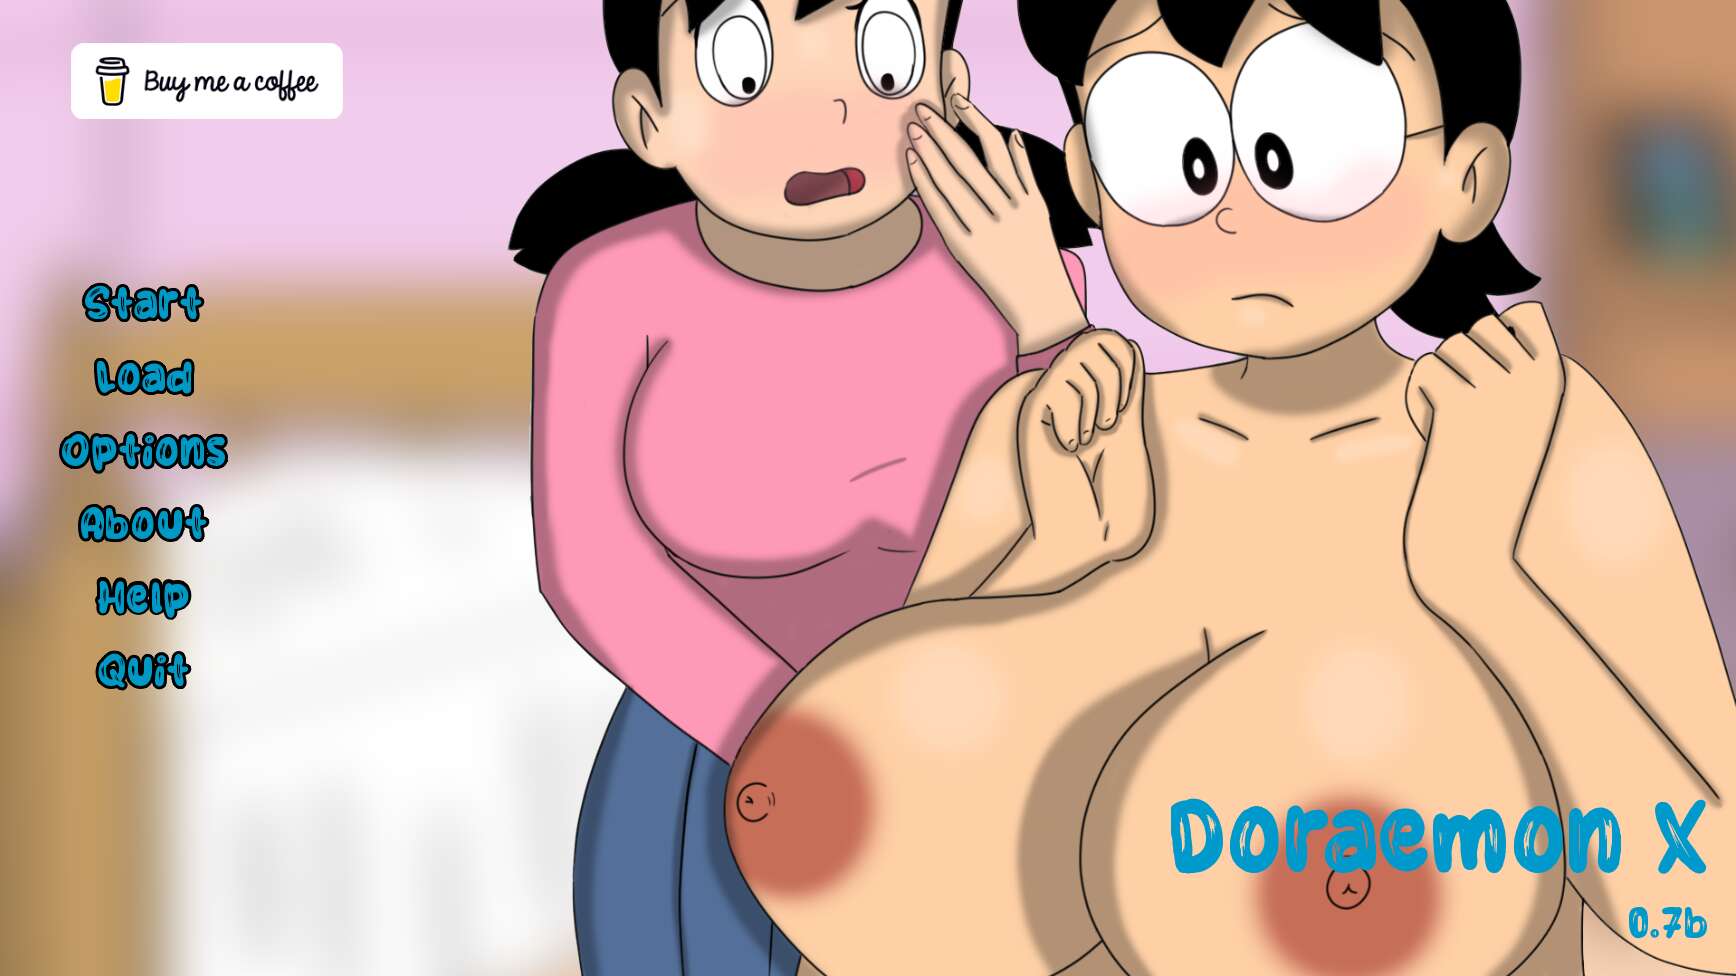 1736px x 976px - Doraemon Xxx Videos | Sex Pictures Pass